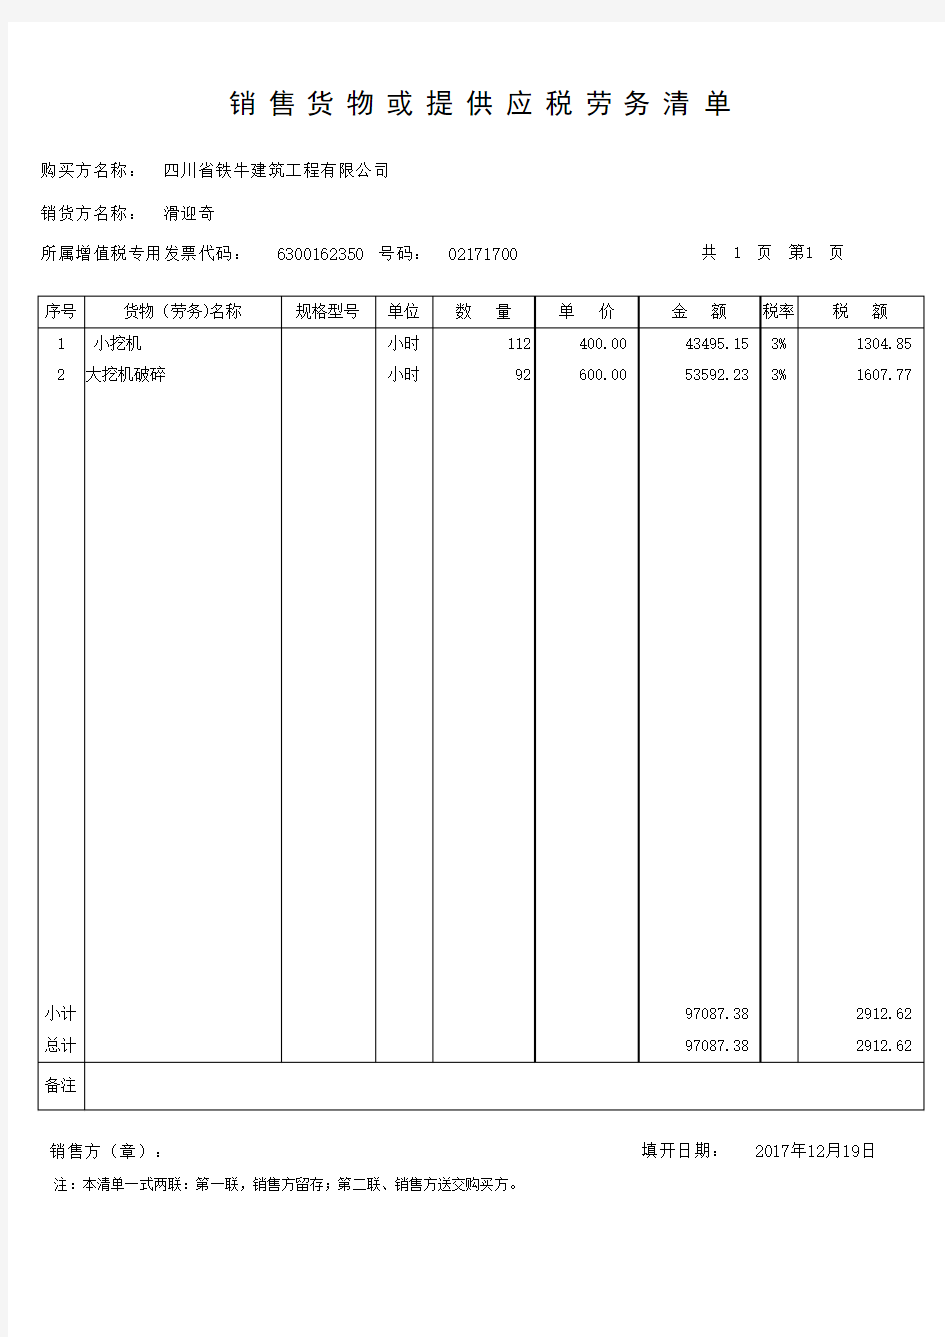 增值税销售货物或者提供应税劳务清单(模板)